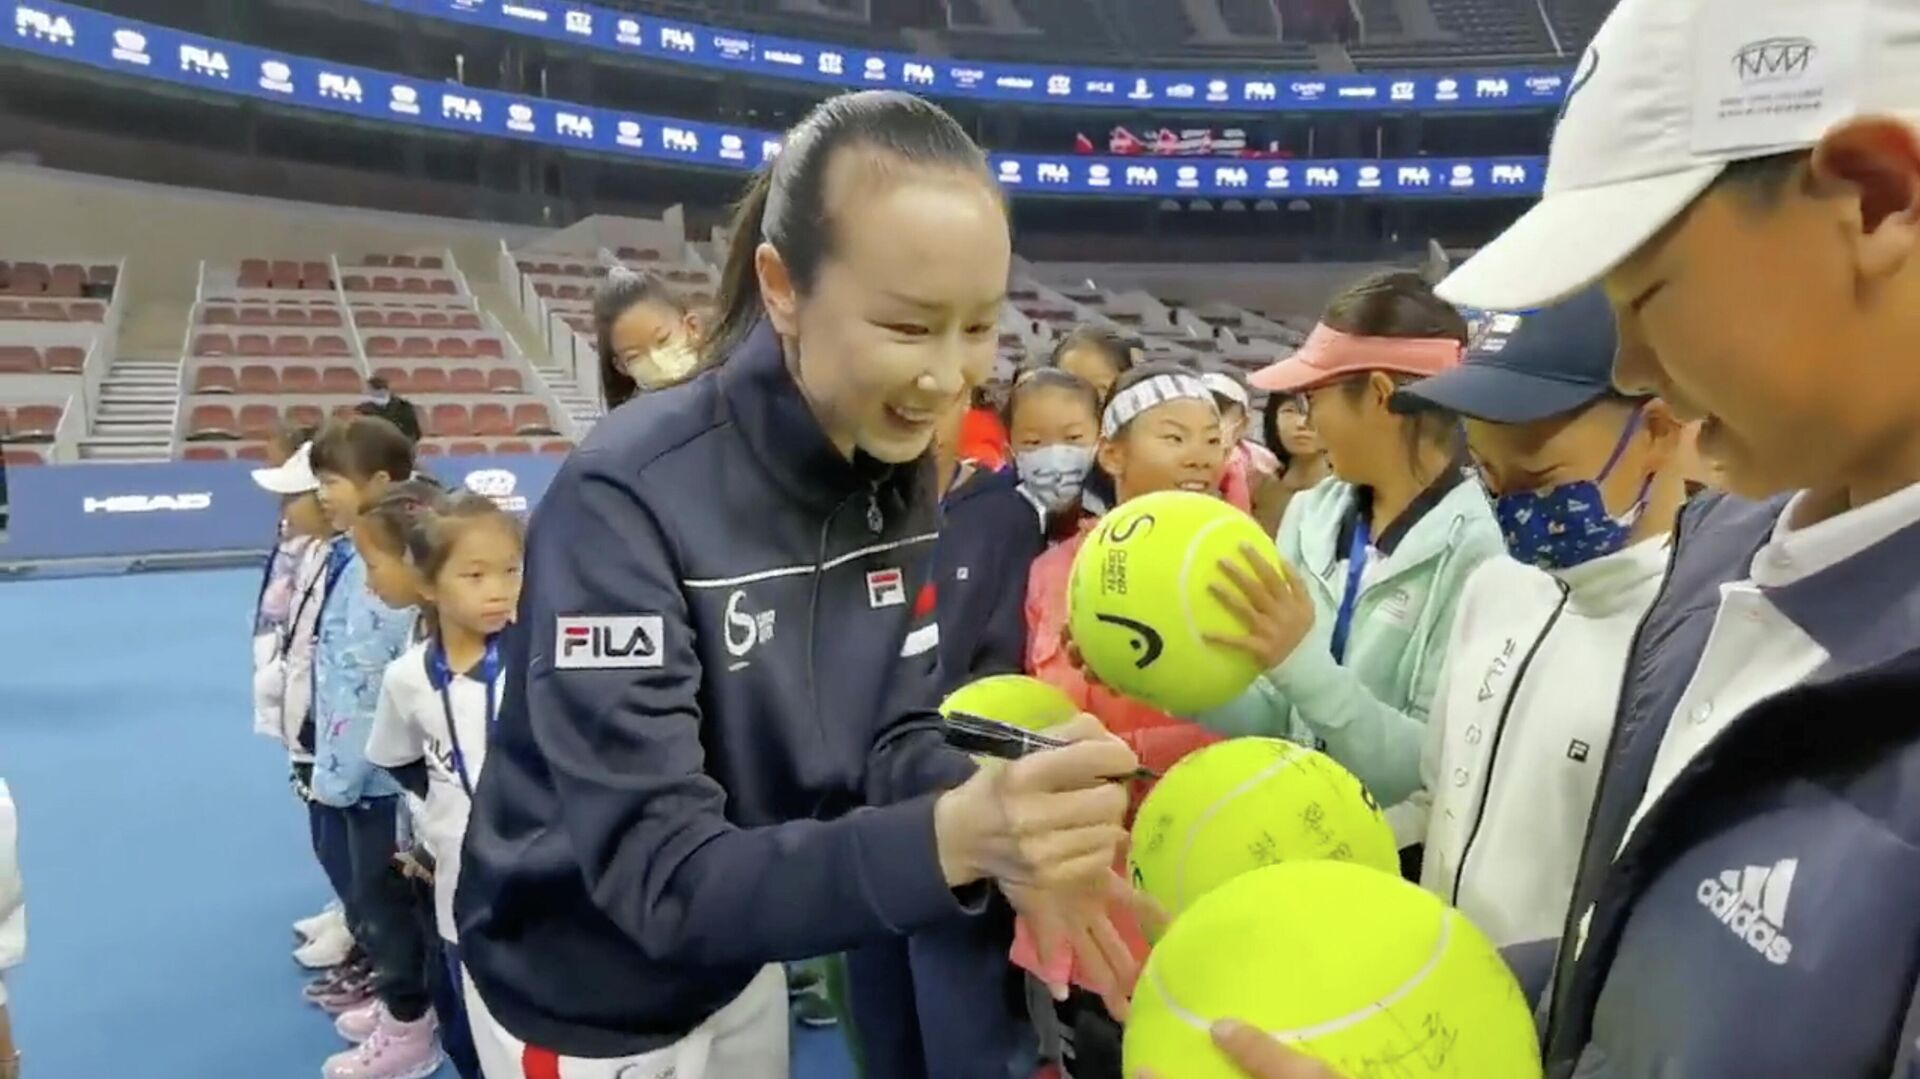 لاعبة التنس الصينية، بينغ شواي، توقع كرات تنس كبيرة الحجم في حفل افتتاح نهائي فيلا كيدز تنس جونيور في بكين، في أول ظهور لها بعد حادث اختفائها، 21 نوفمبر/ تشرين الثاني 2021 - سبوتنيك عربي, 1920, 23.11.2021